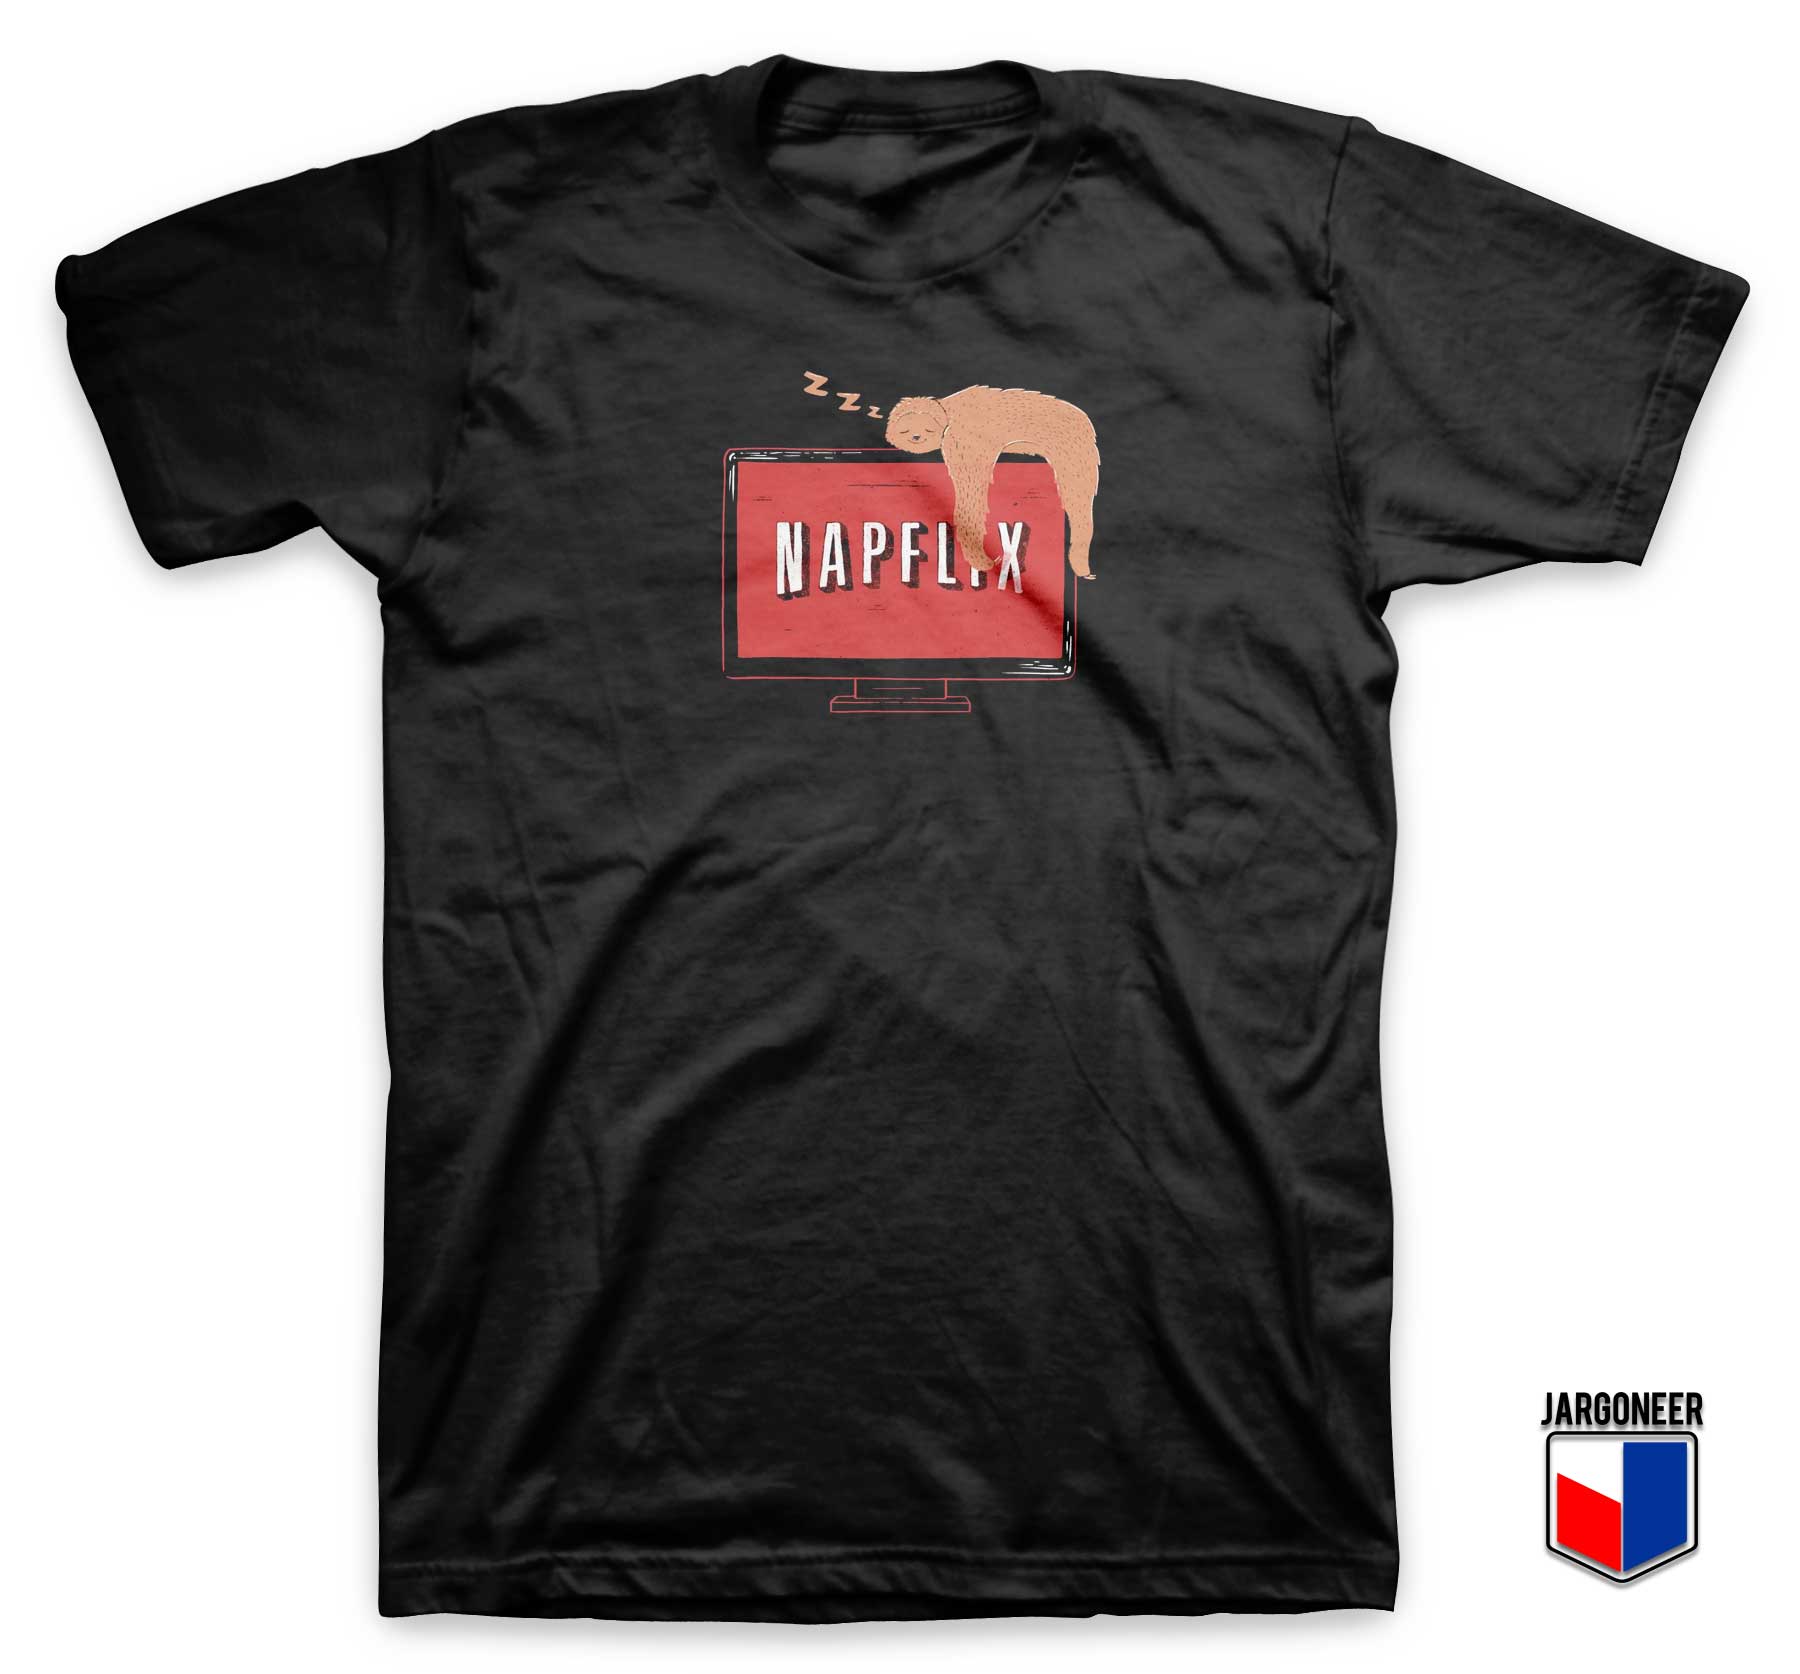 Napflix Sloth Parody T Shirt - Shop Unique Graphic Cool Shirt Designs